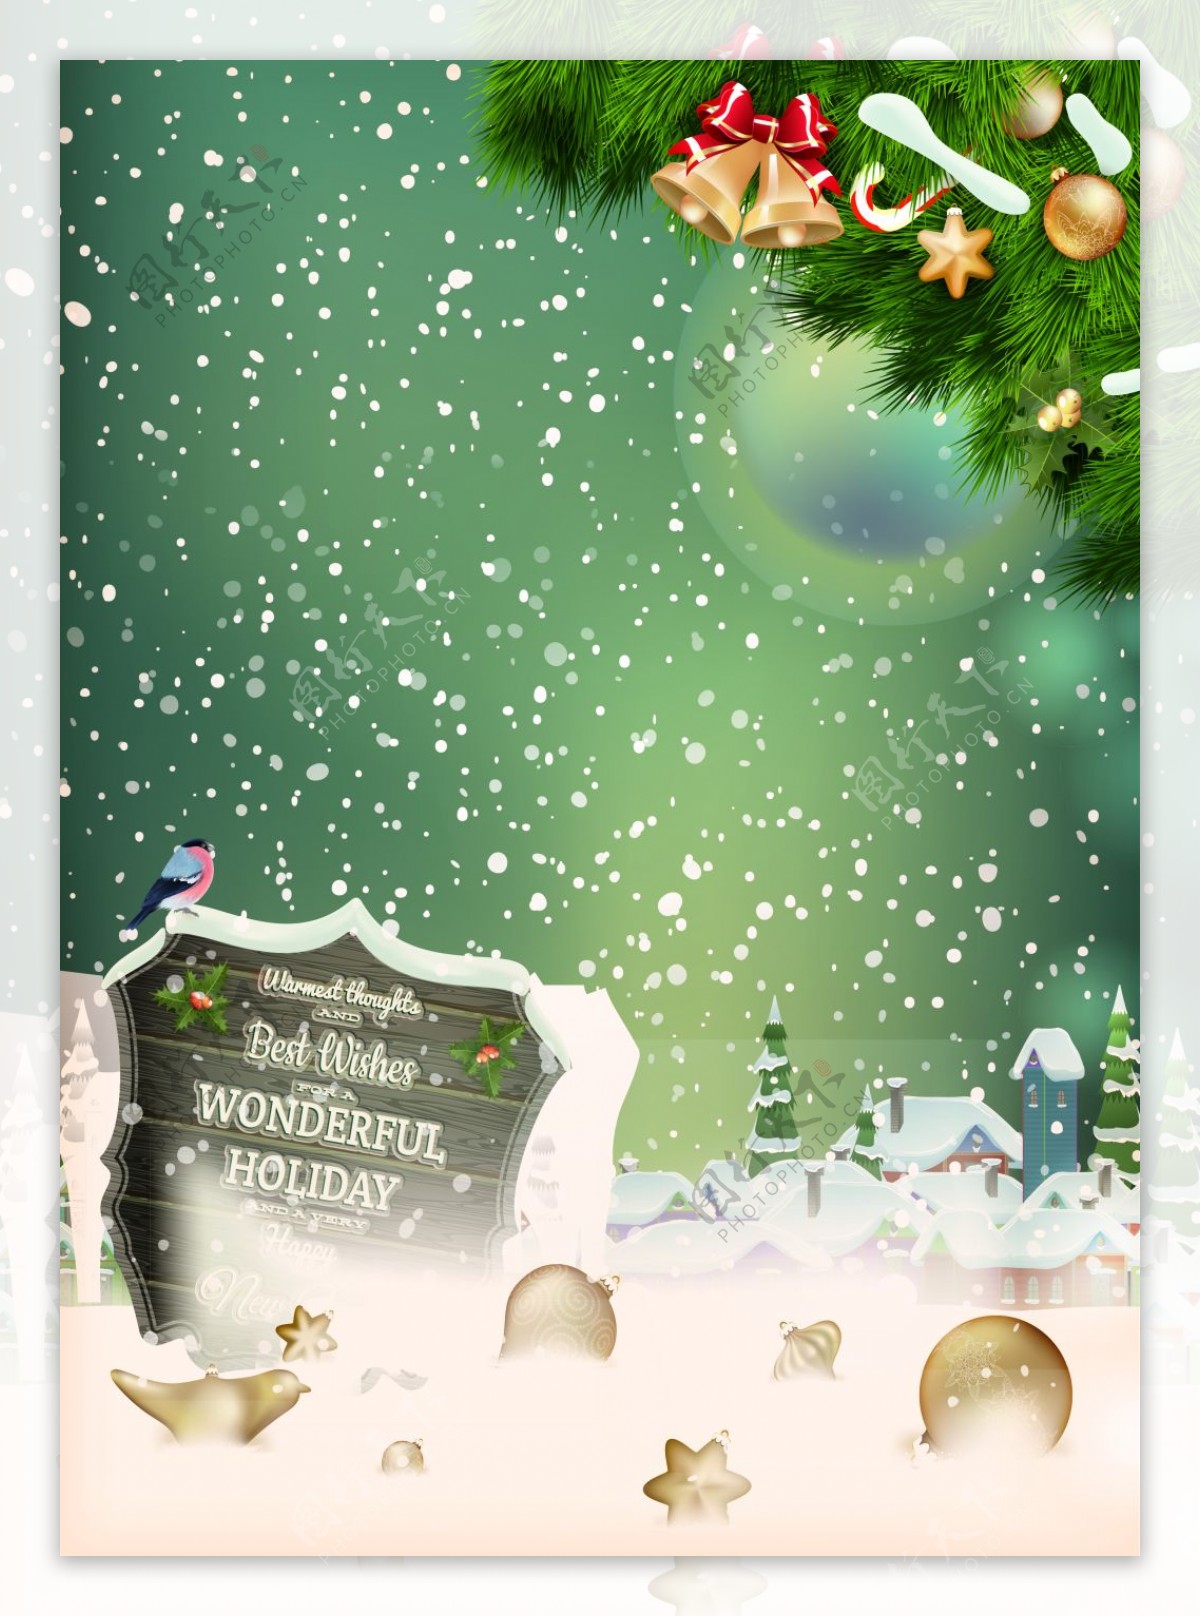 圣诞树飘雪盾牌海报背景素材